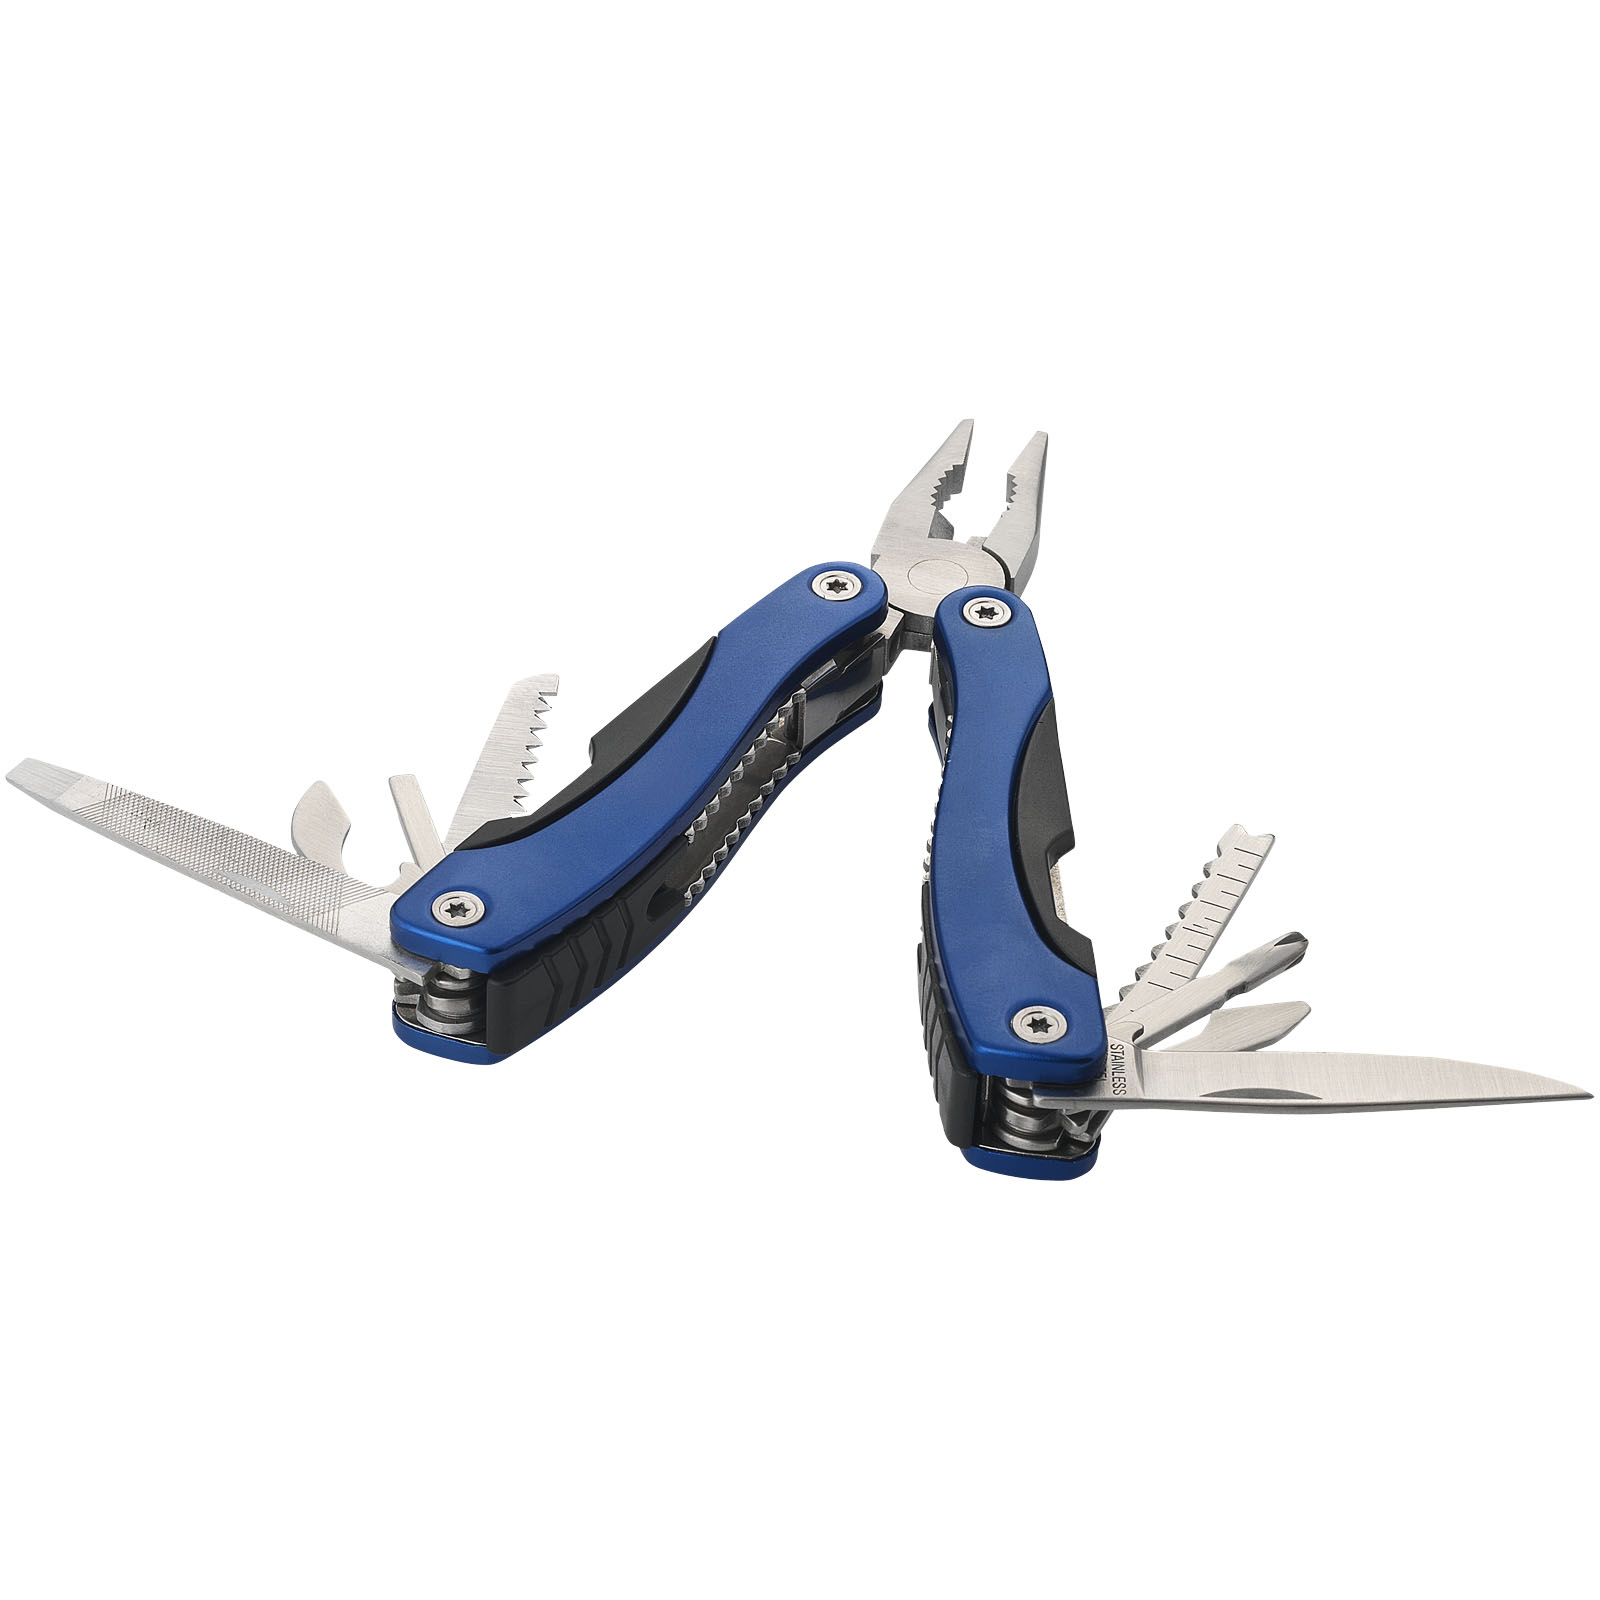 Tools & Car Accessories - Casper 11-function multi-tool